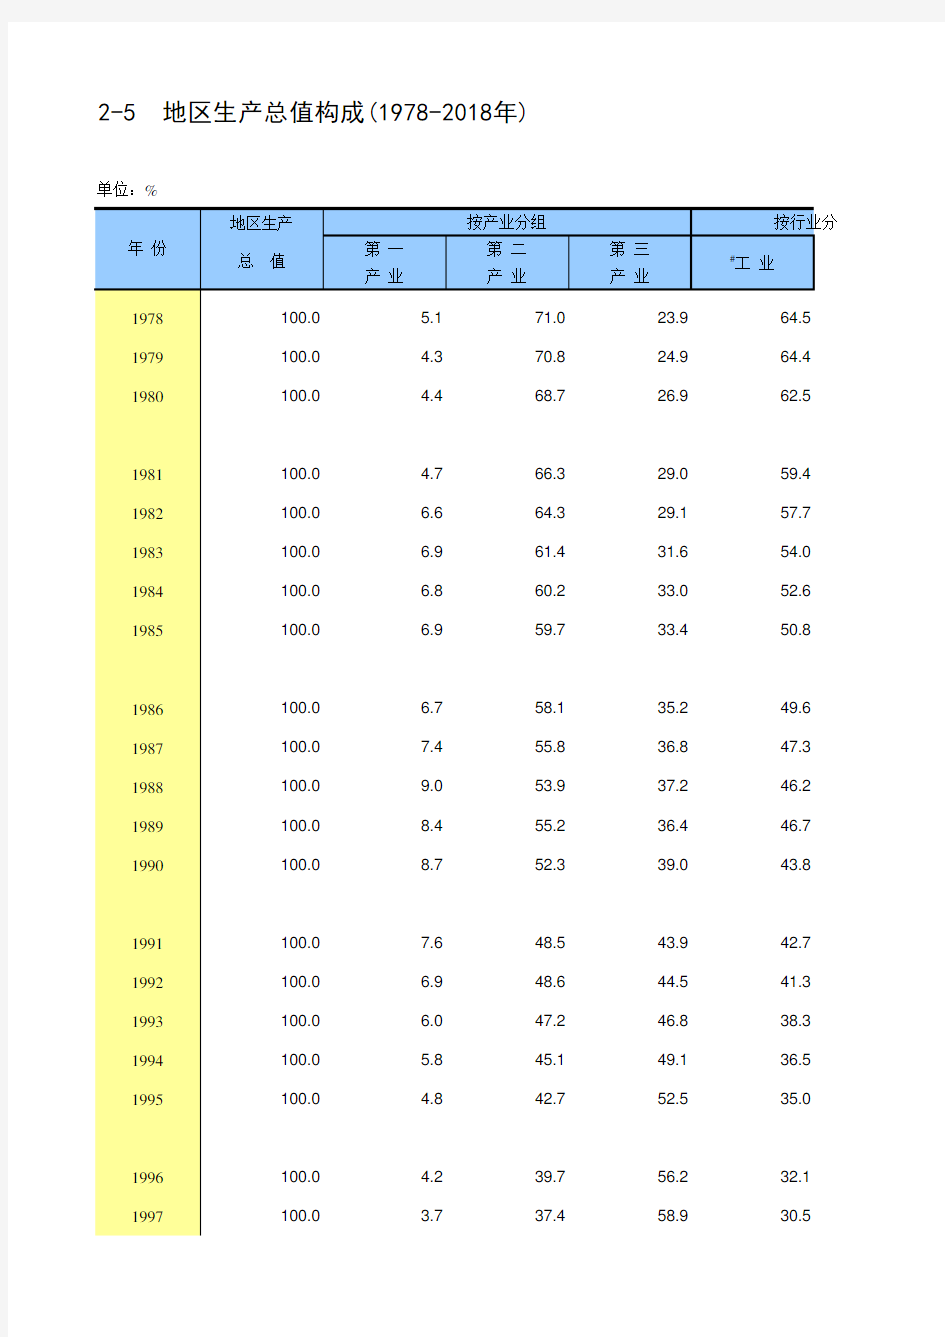 北京市统计年鉴宏观经济指标数据处理：2-5 地区生产总值构成第一二三产业(1978-2018年)